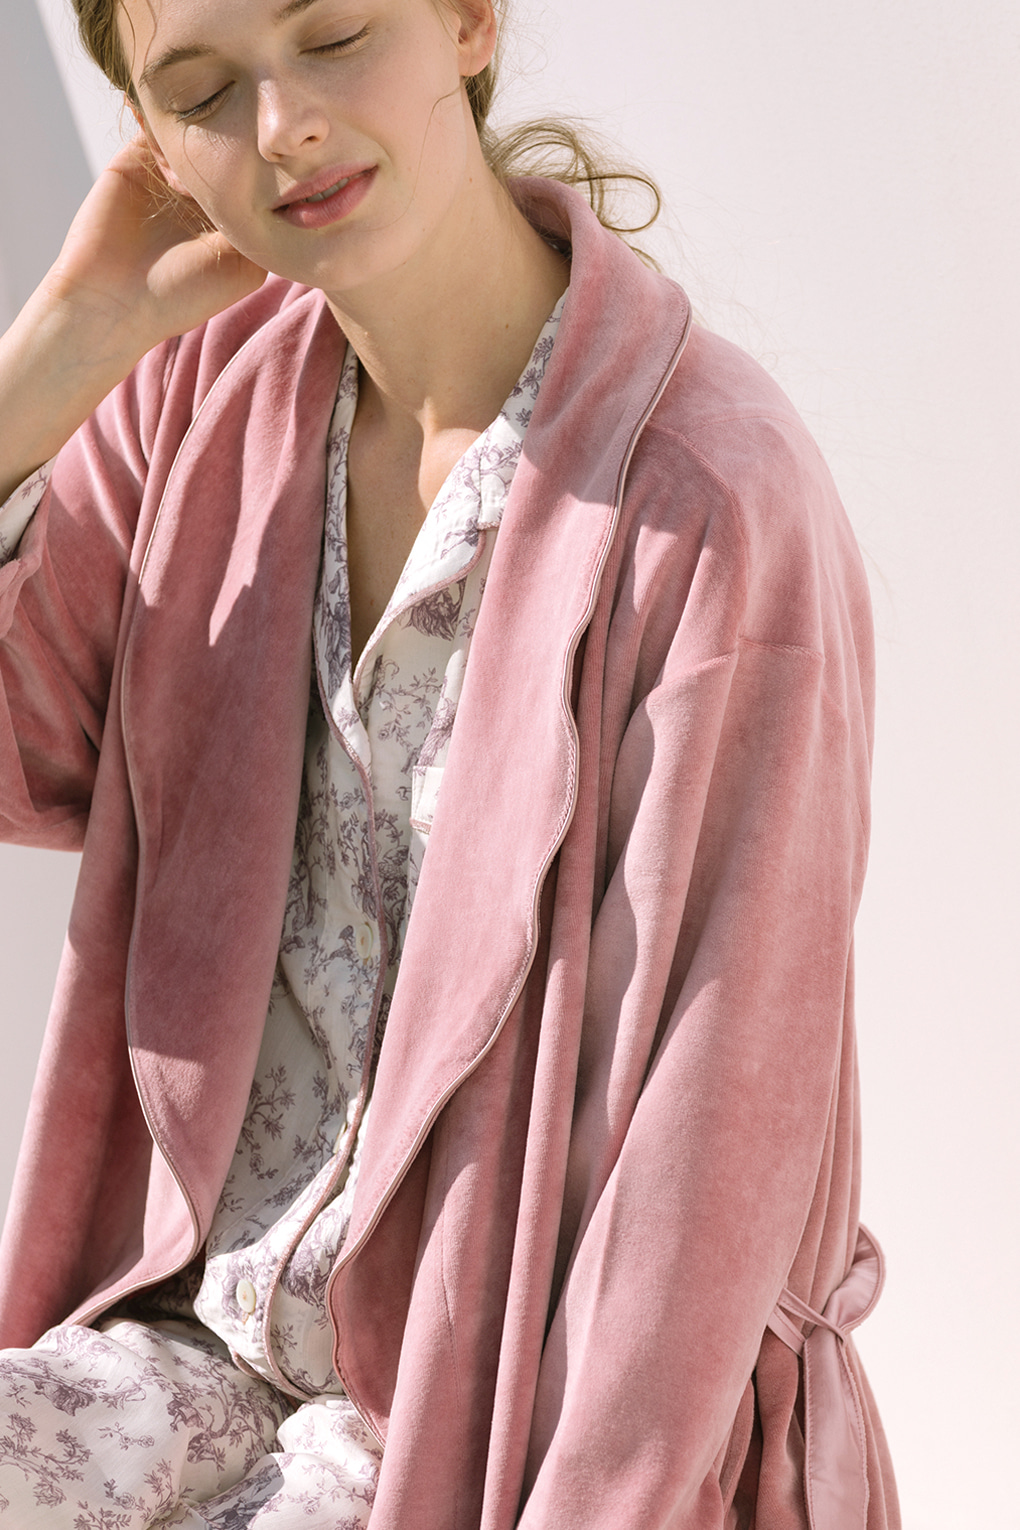 뉴위스퍼로브(핑크)잠옷, 홈웨어, 아동내복, 아동속옷,성인잠옷,고후나비